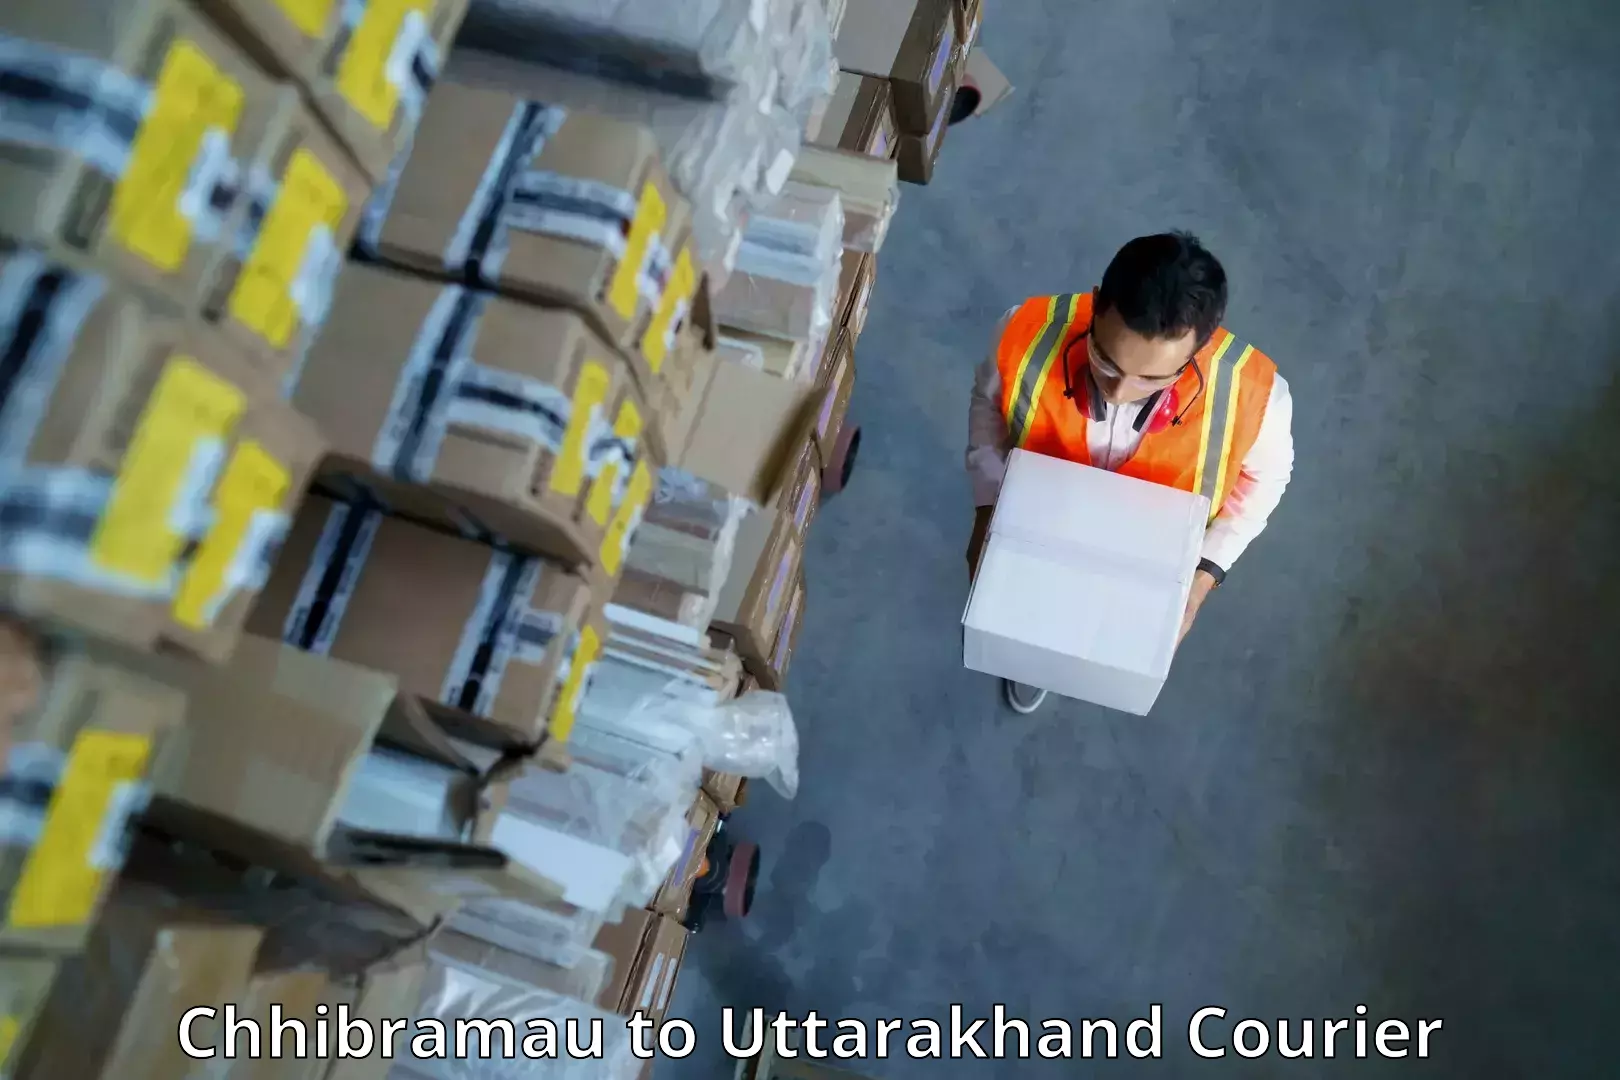 Dynamic courier services Chhibramau to Kotdwara